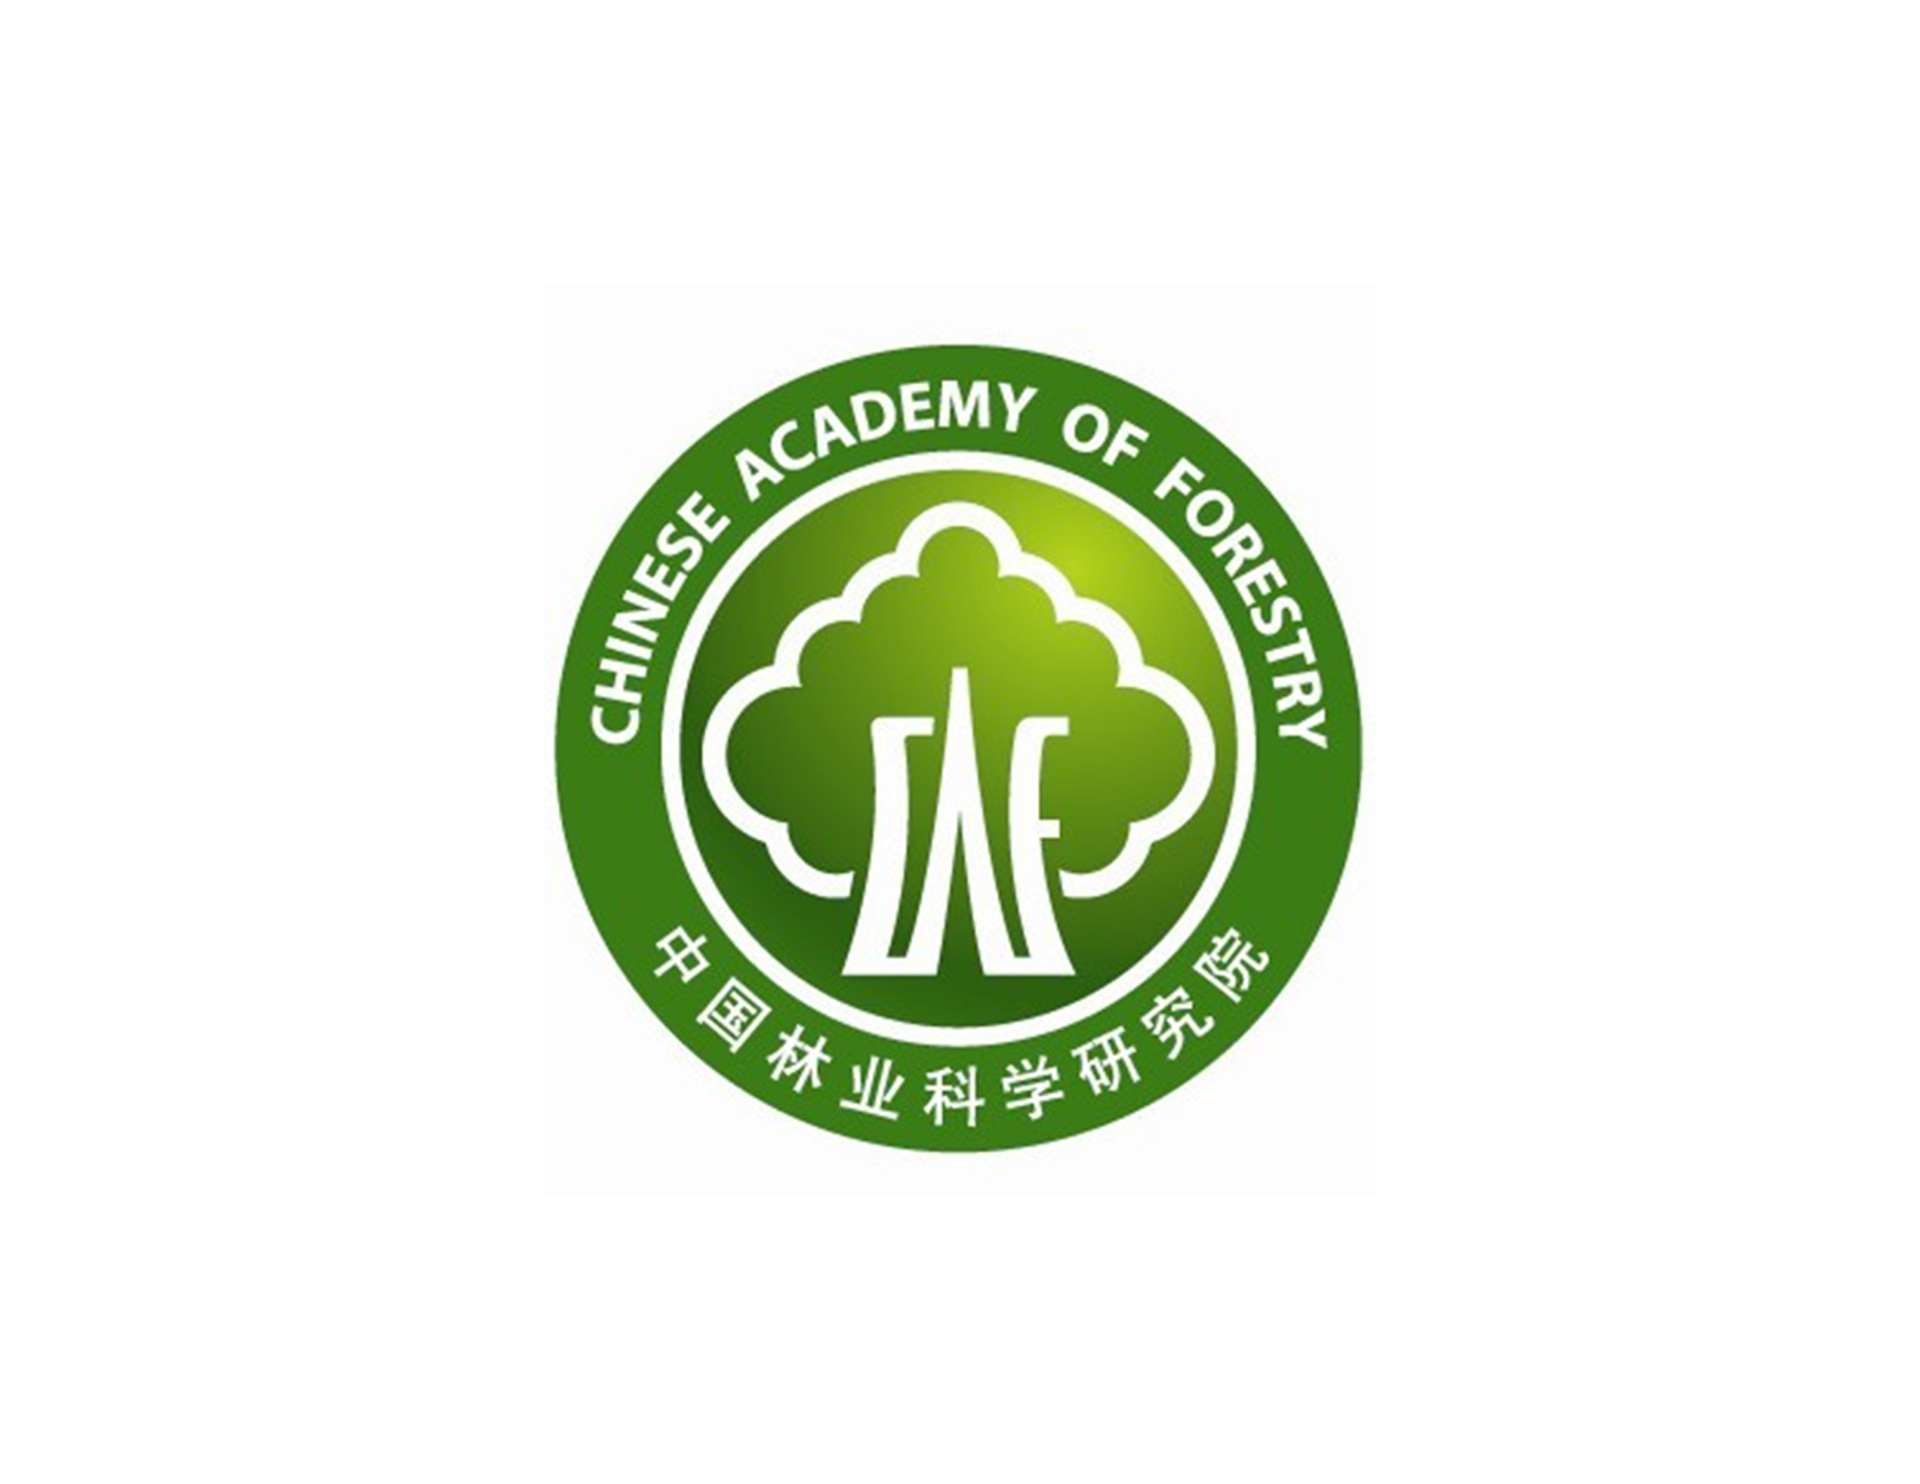 中国林业科学研究院林业研究所设计以圆徽的形式体现权威性，中间以CAF简称与大树相结合